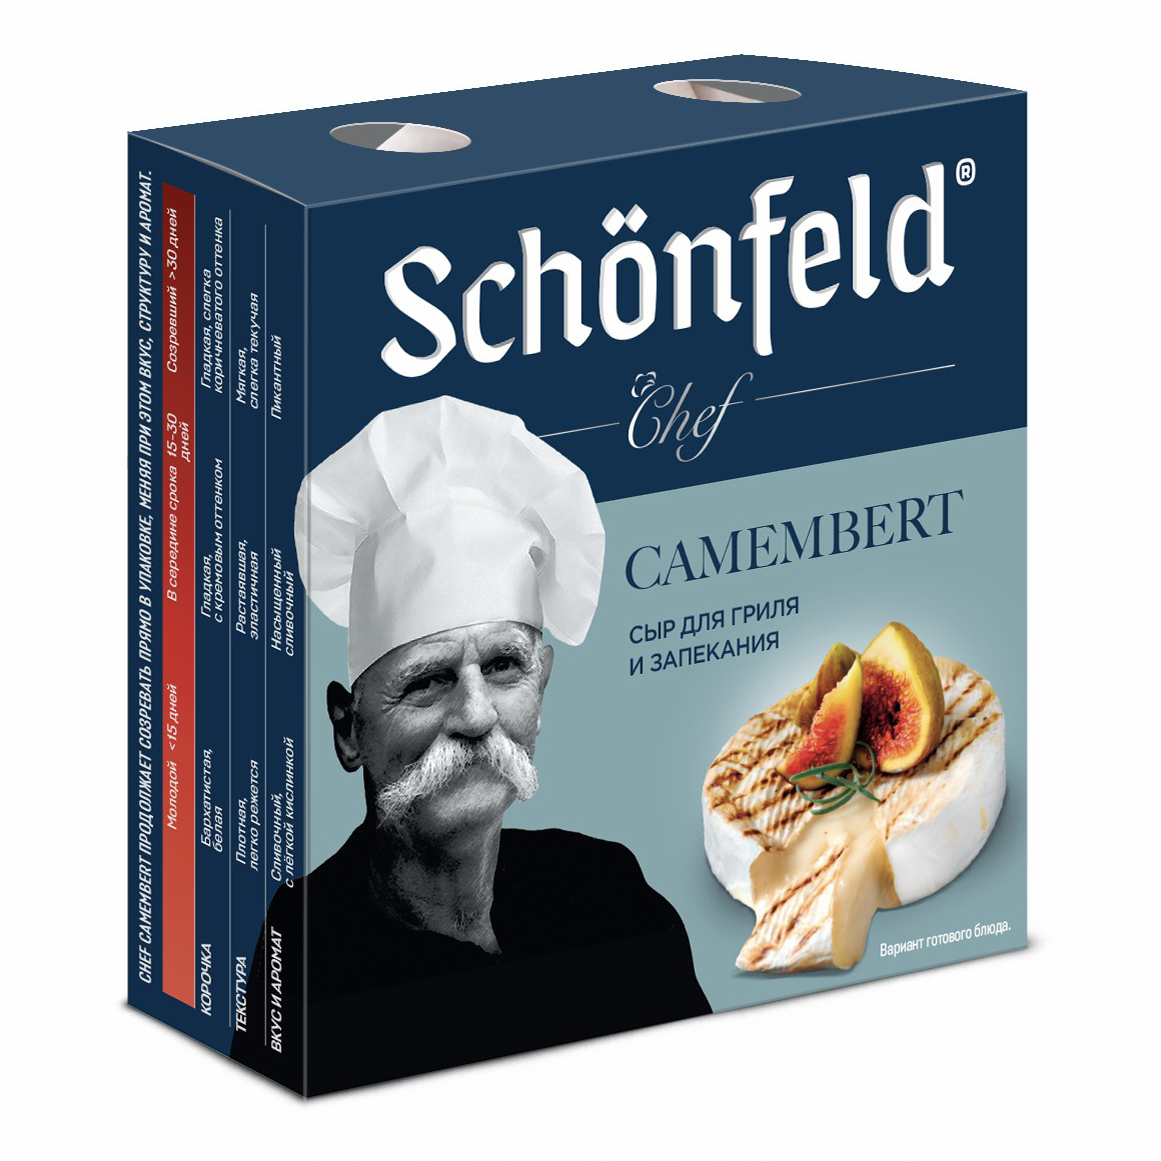 Сыр мягкий Schonfeld Chef Camembert с белой плесенью 50% 125 г